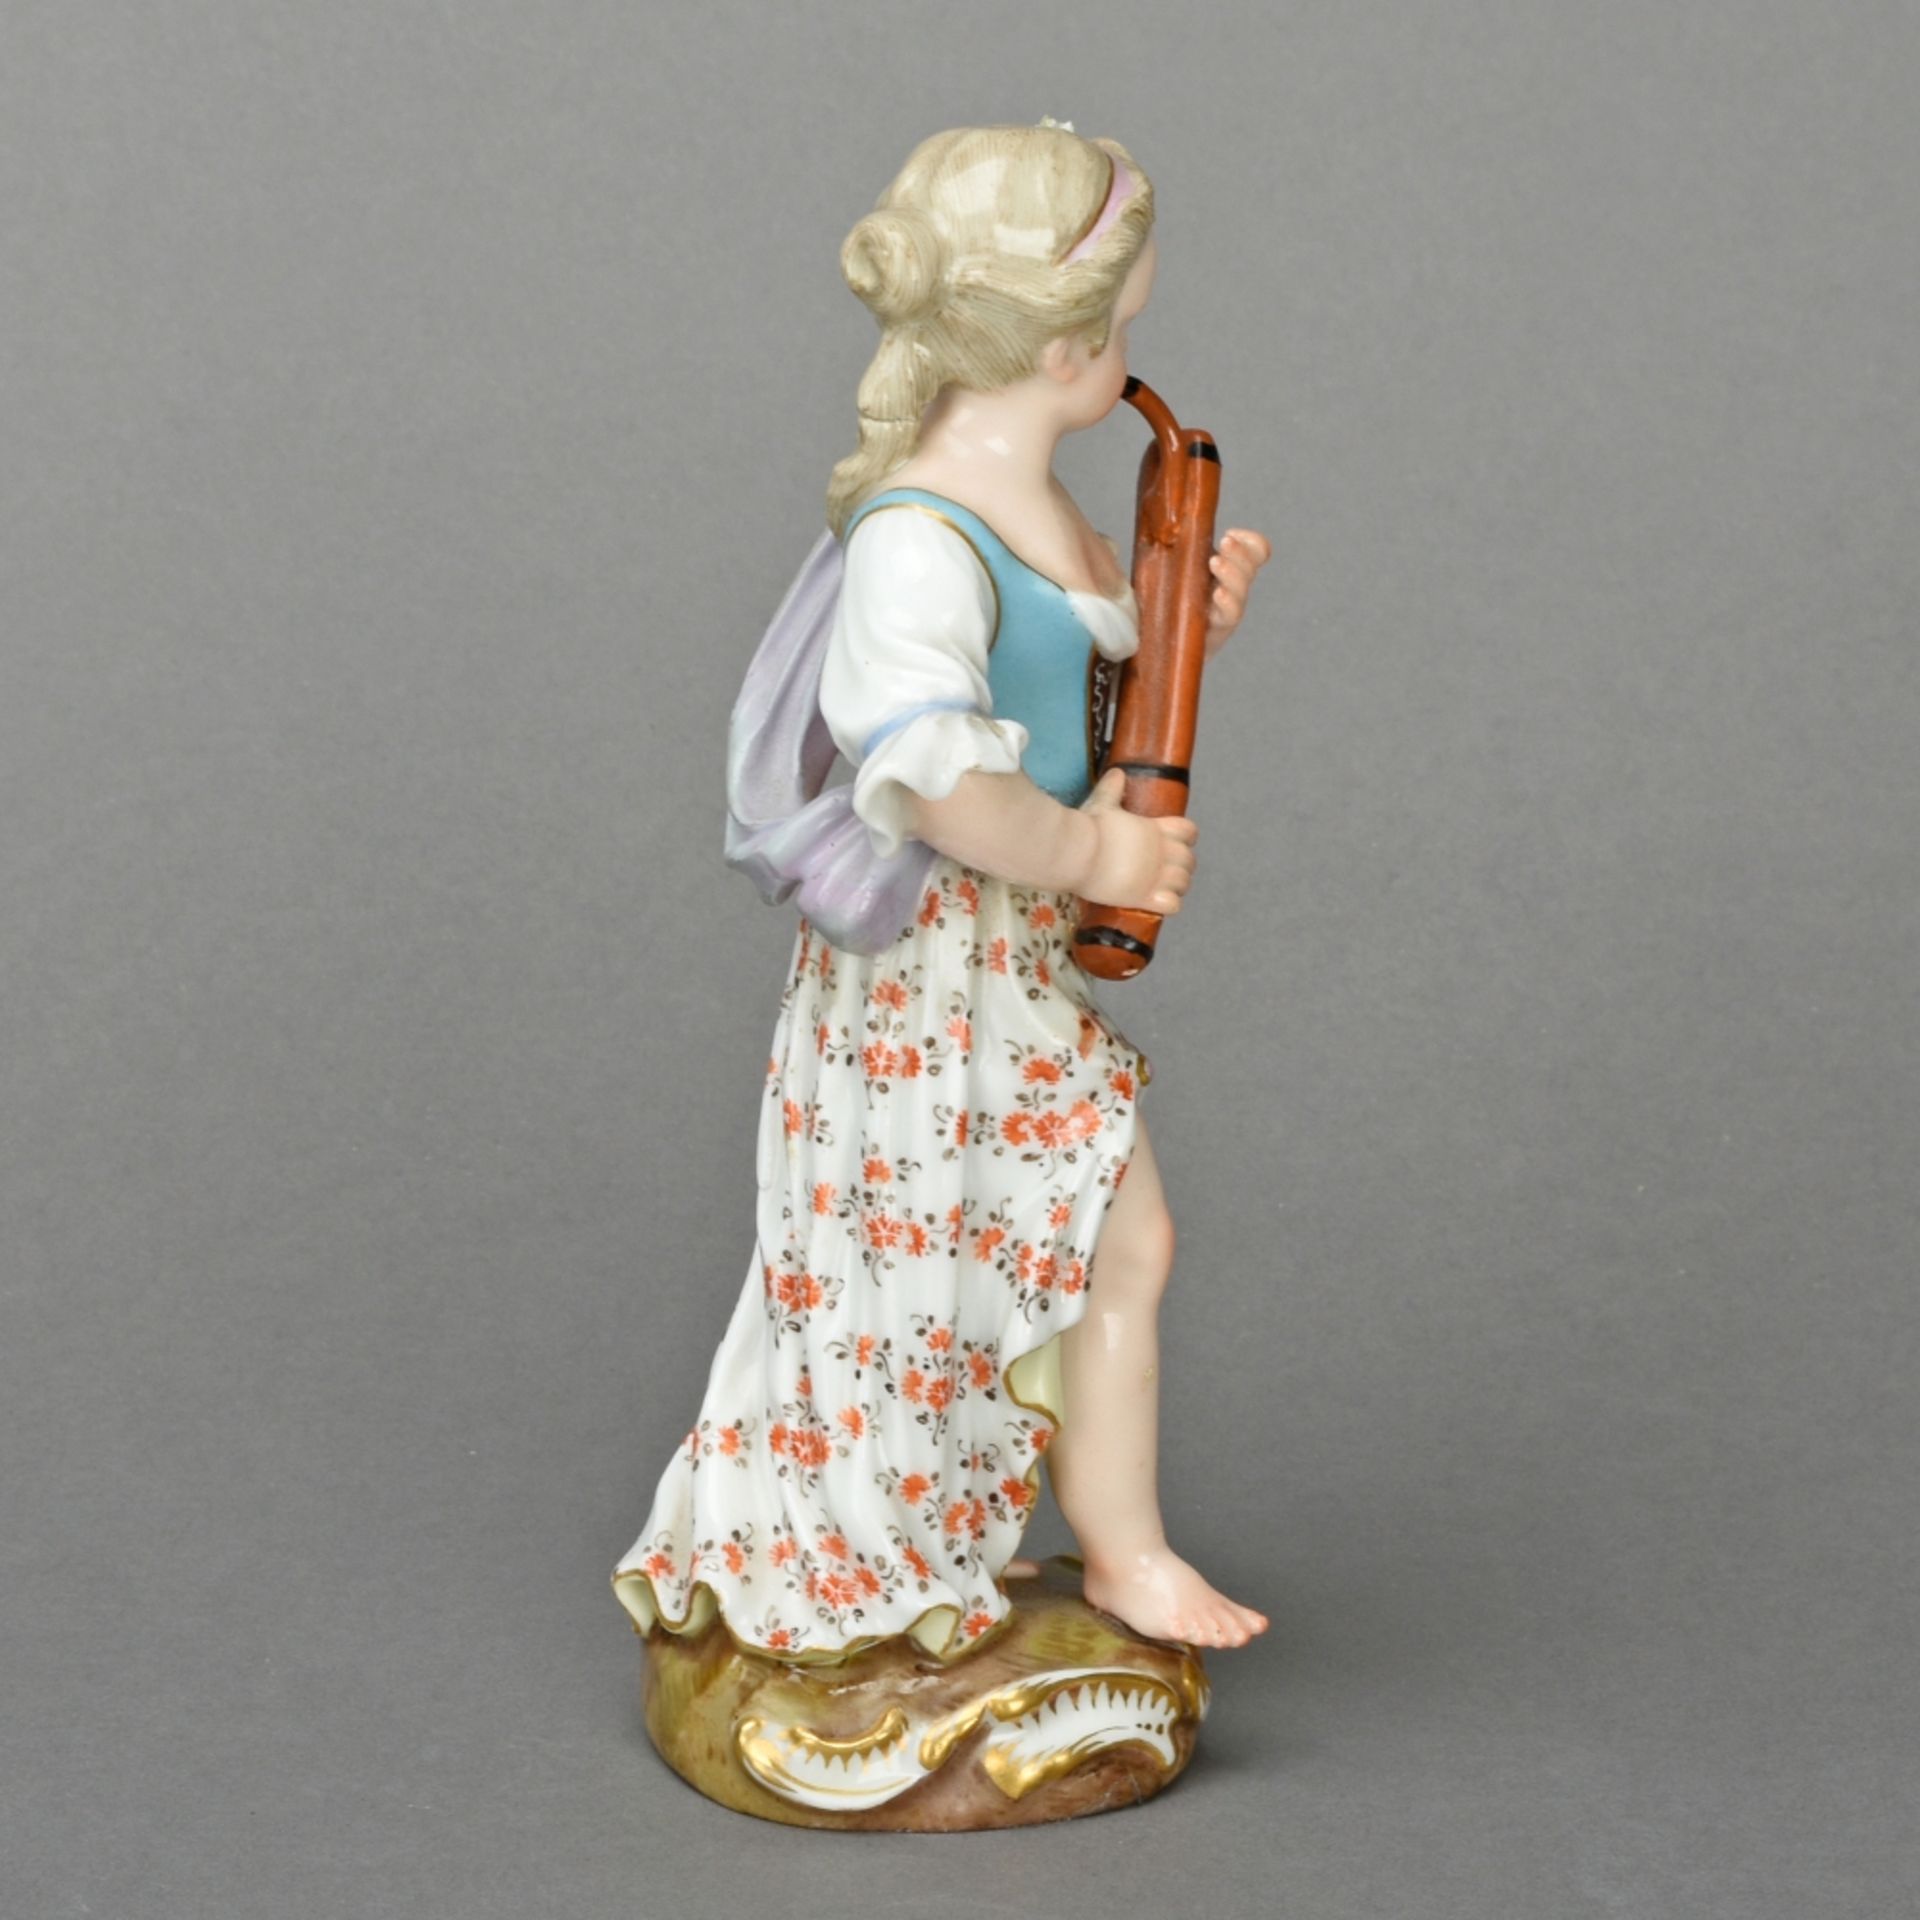 Fagottspielerin aus der Mädchenkapelle - Image 4 of 5